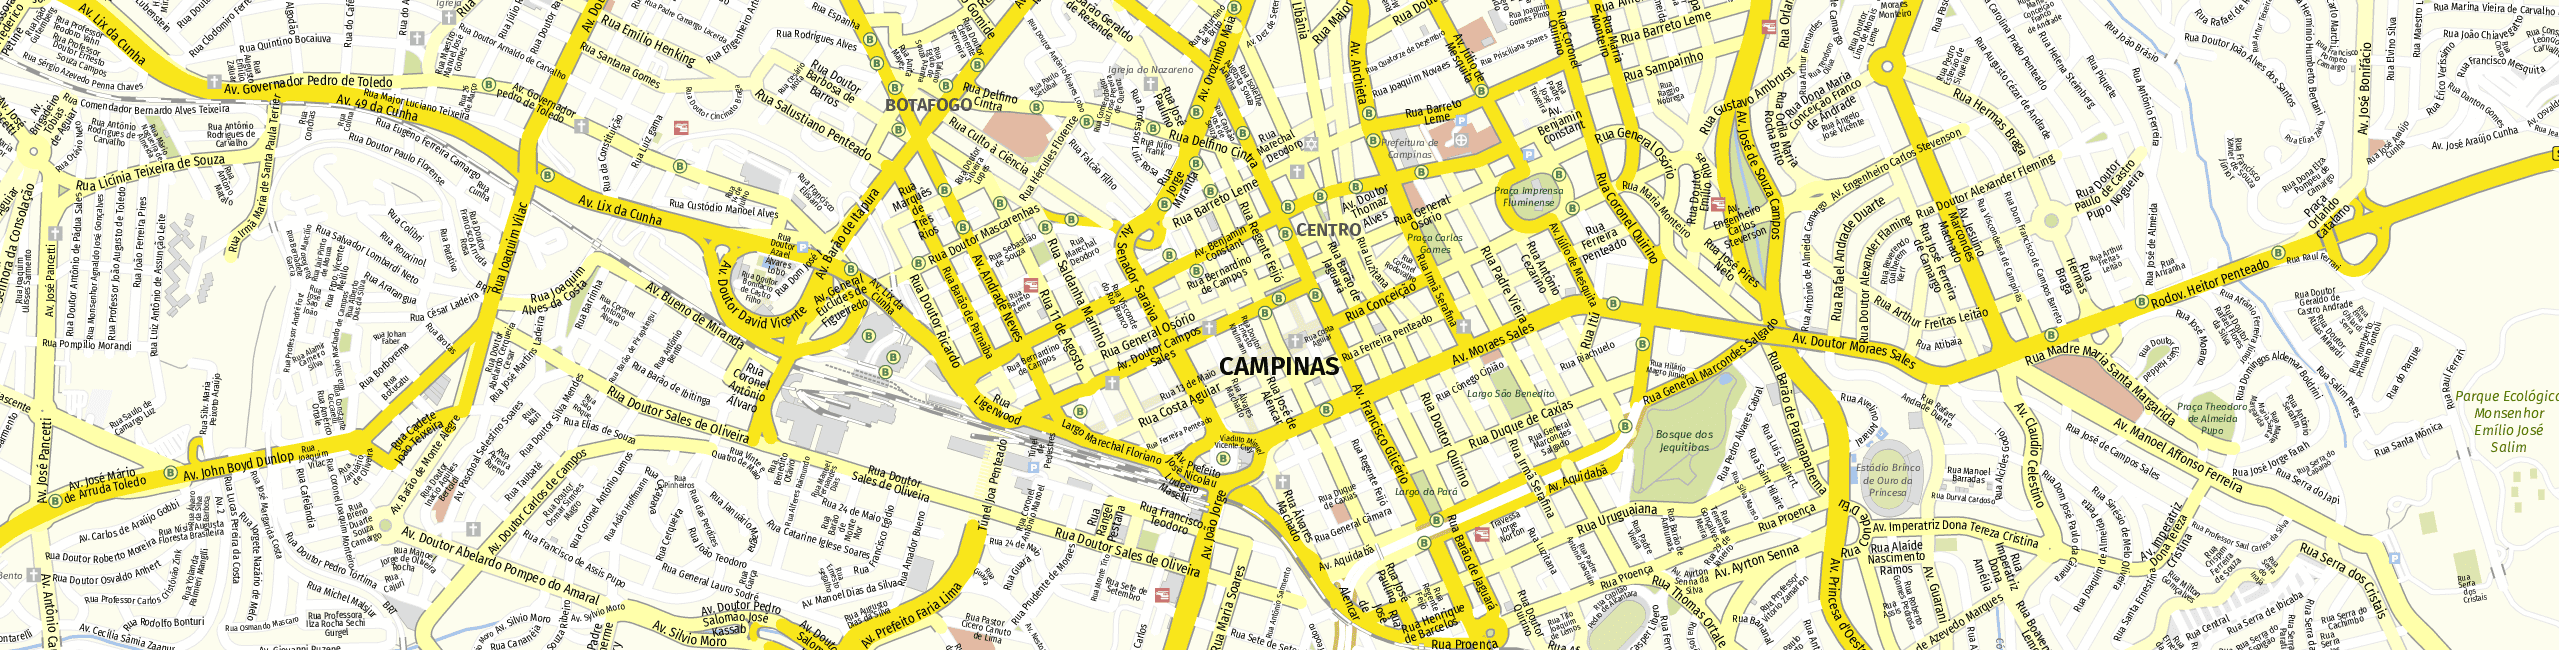 Stadtplan Campinas zum Downloaden.